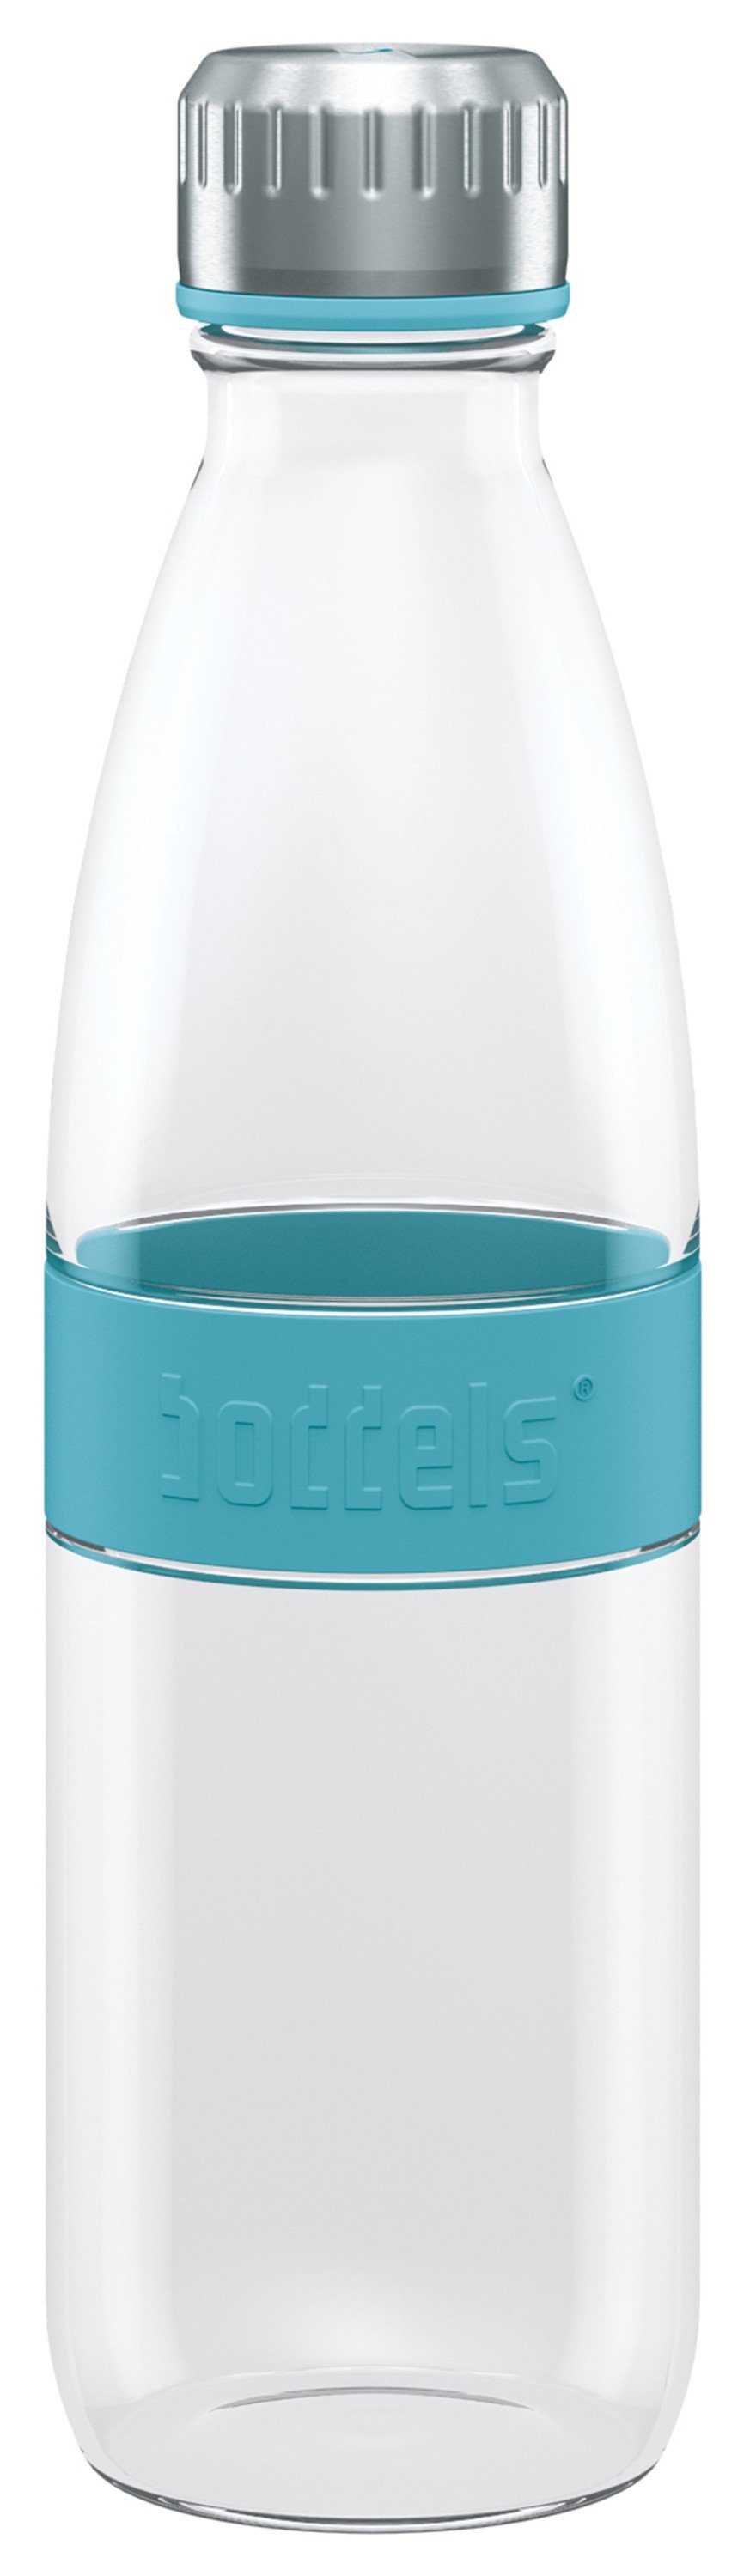 650ml, Flasche boddels auslaufsicher, Trinkflasche aus Türkisblau DREE Glas doppelwandig, bruchfest